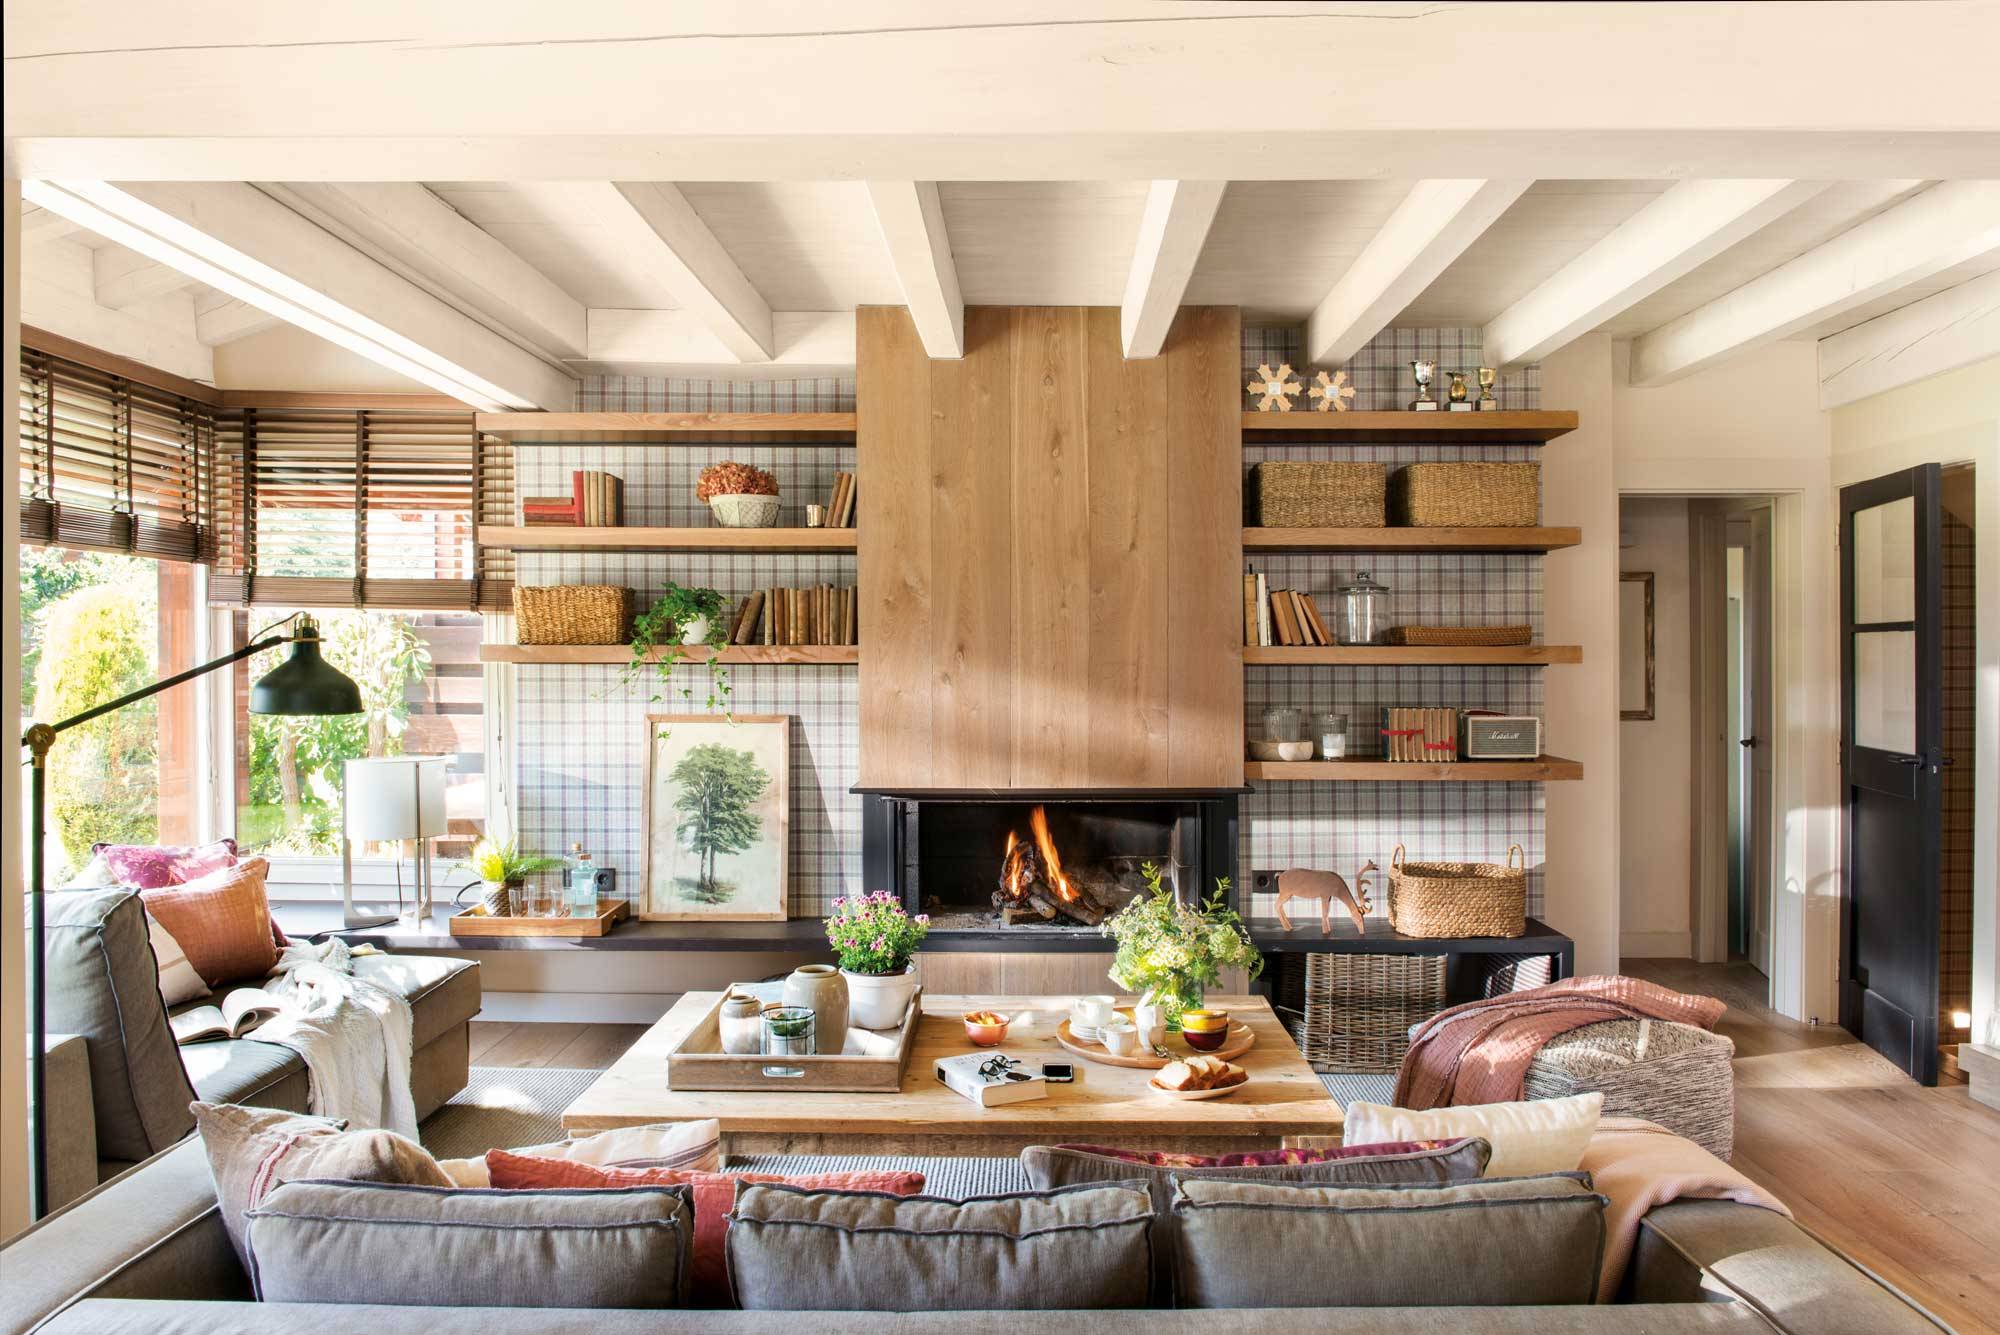 Salón en casa de campo con estilo actual con chimenea, papel pintado a cuadros, estantería y sofás grises.